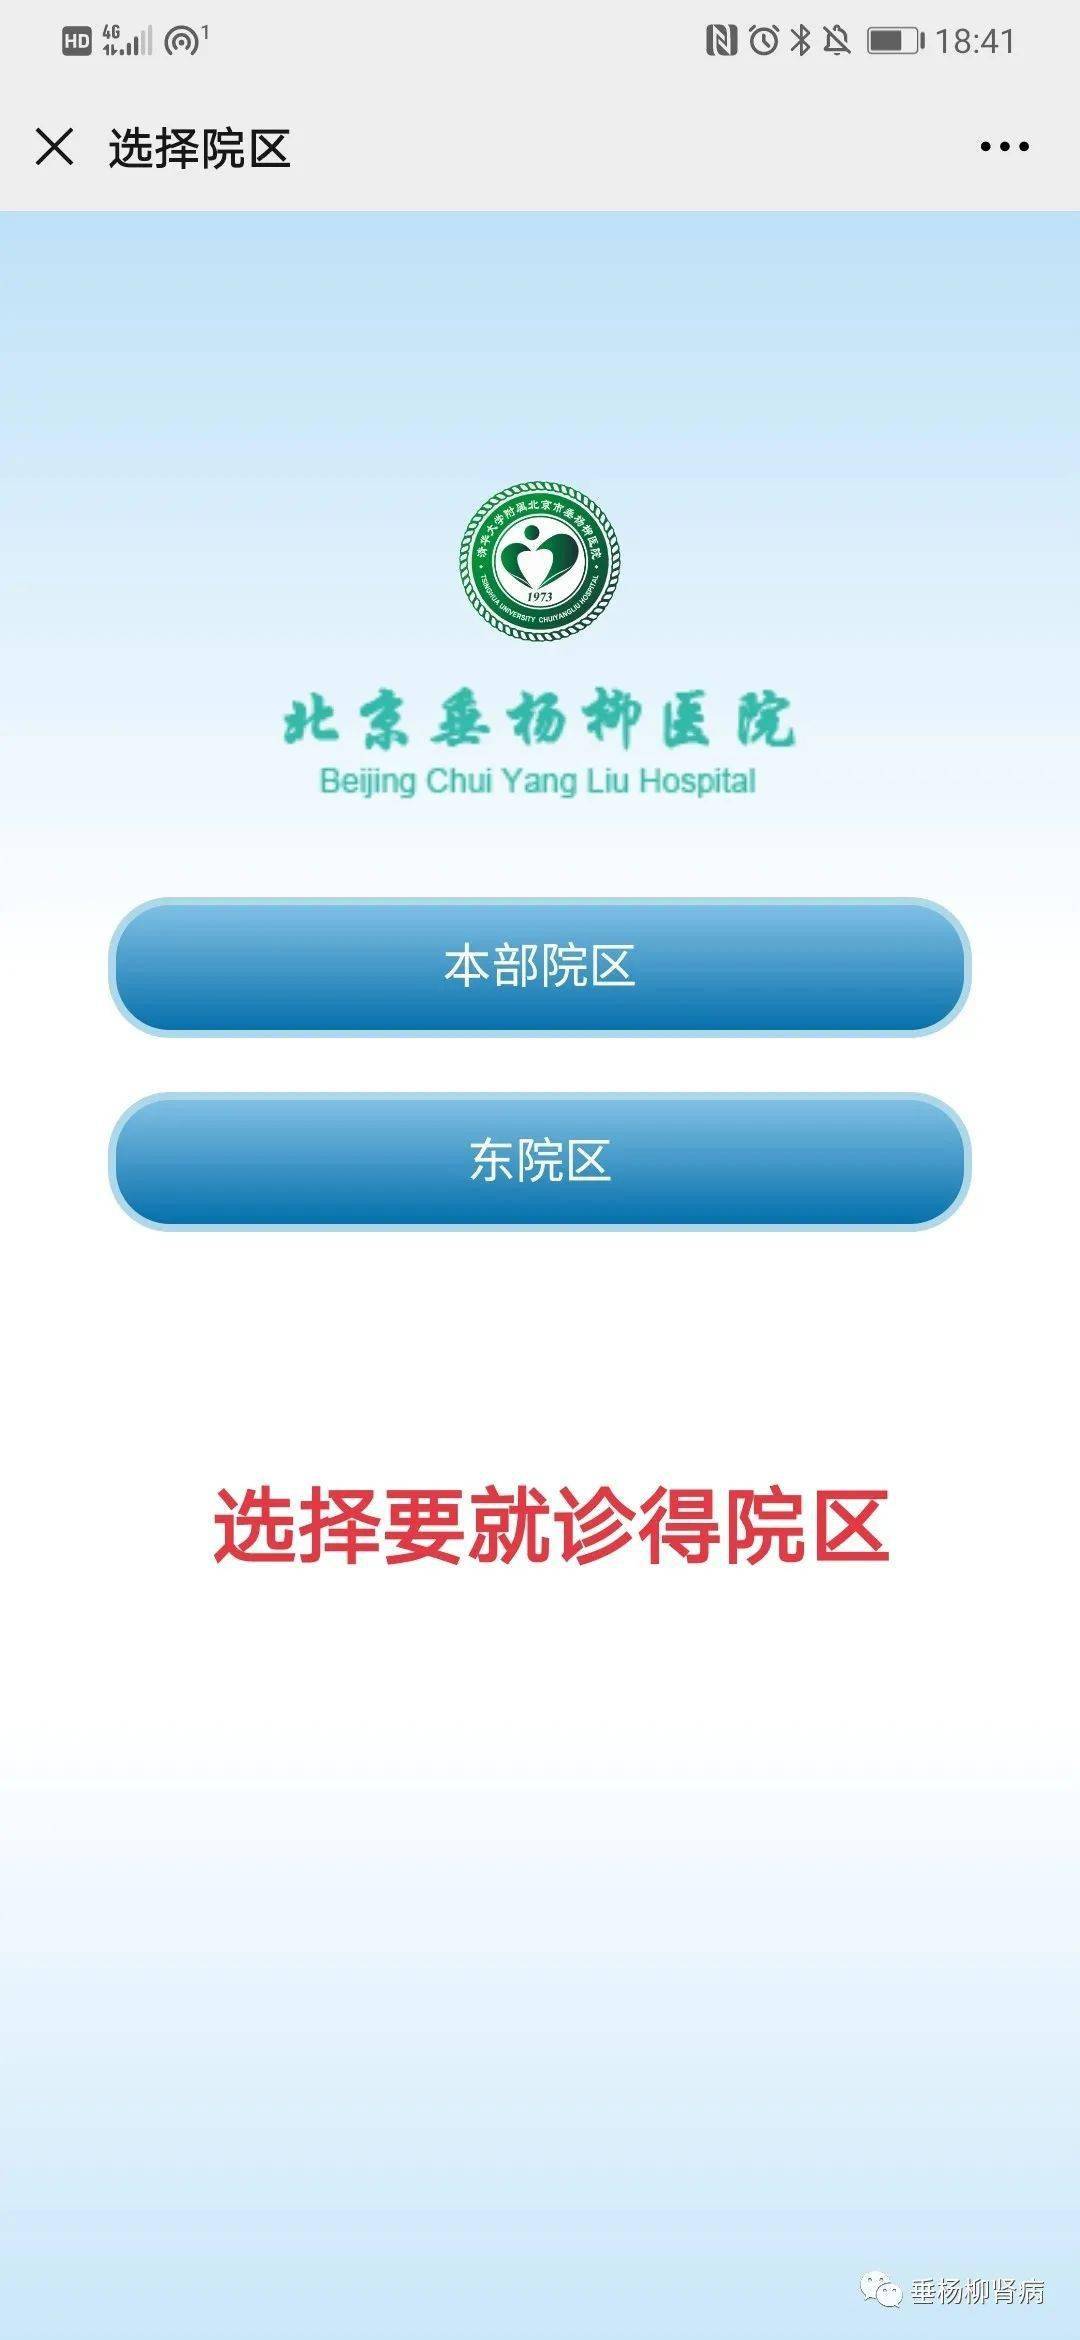 北京大学第一医院号贩子—加微信咨询挂号!【10分钟出号】的简单介绍